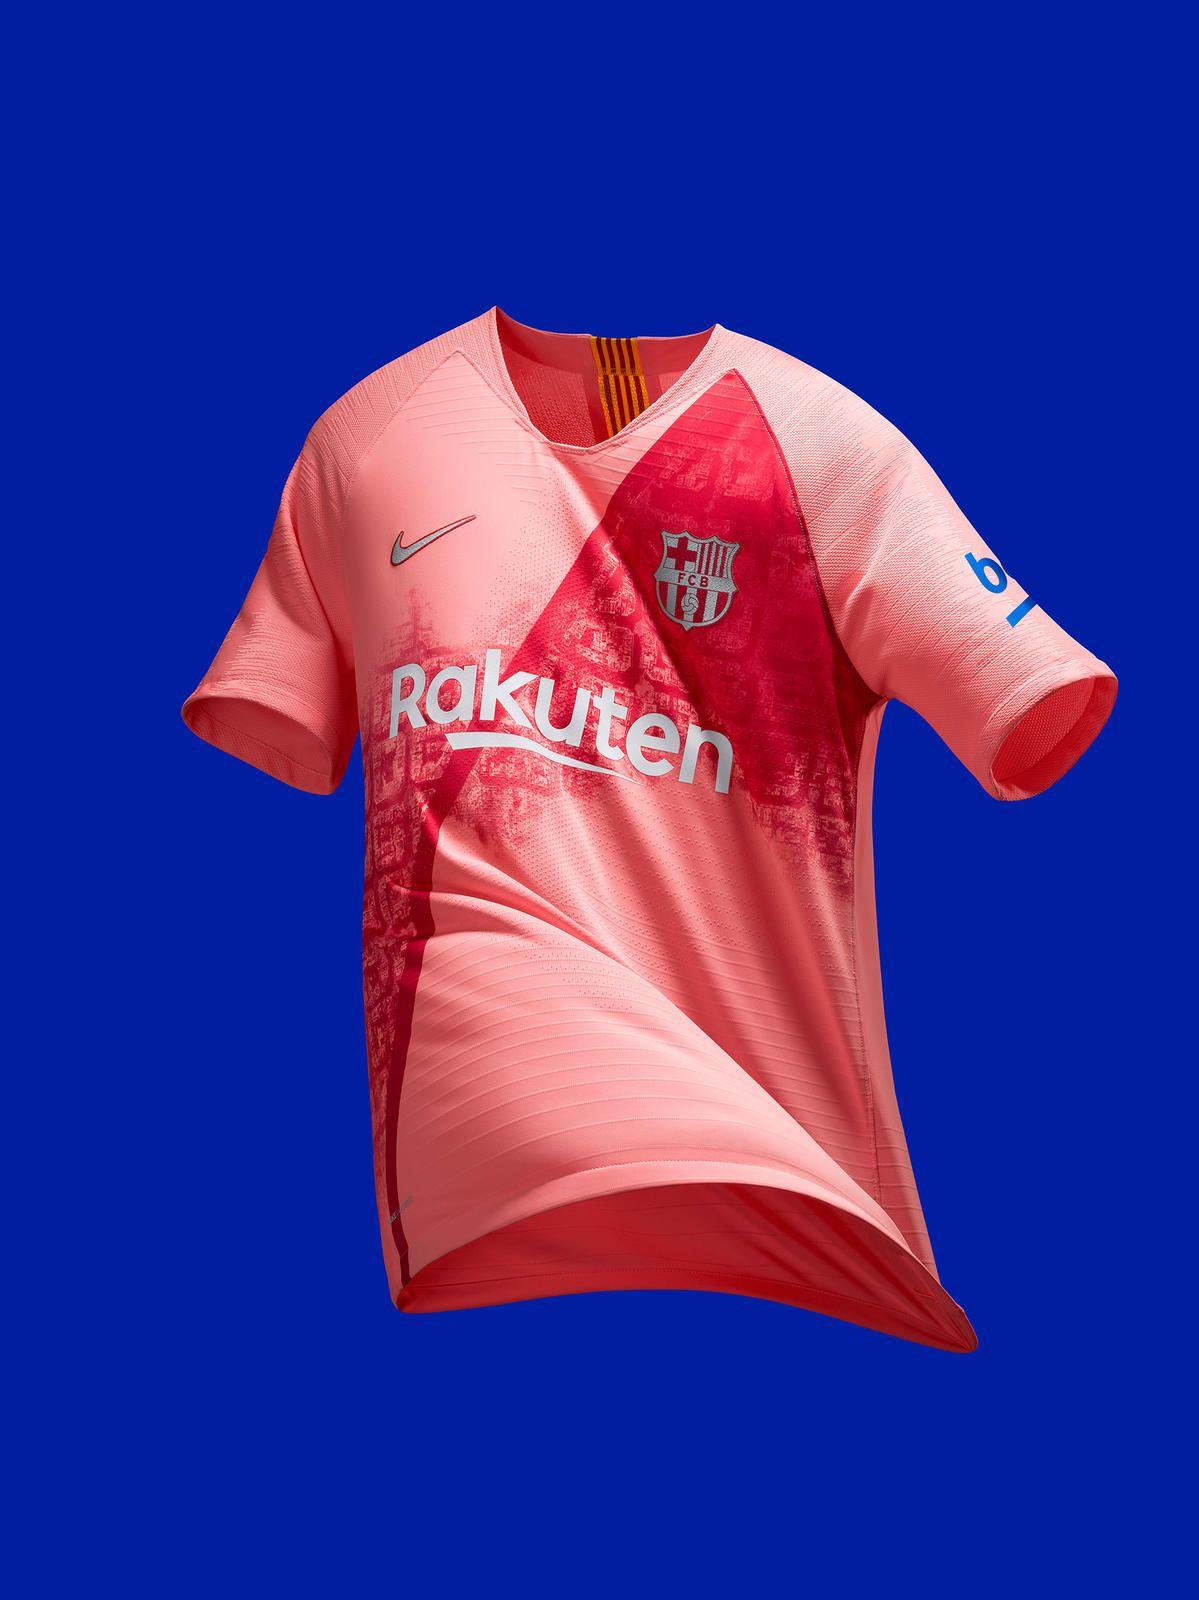 Diagonal Check with Nike Logo - FC Barcelona Third Kit 2018-19 - Nike News